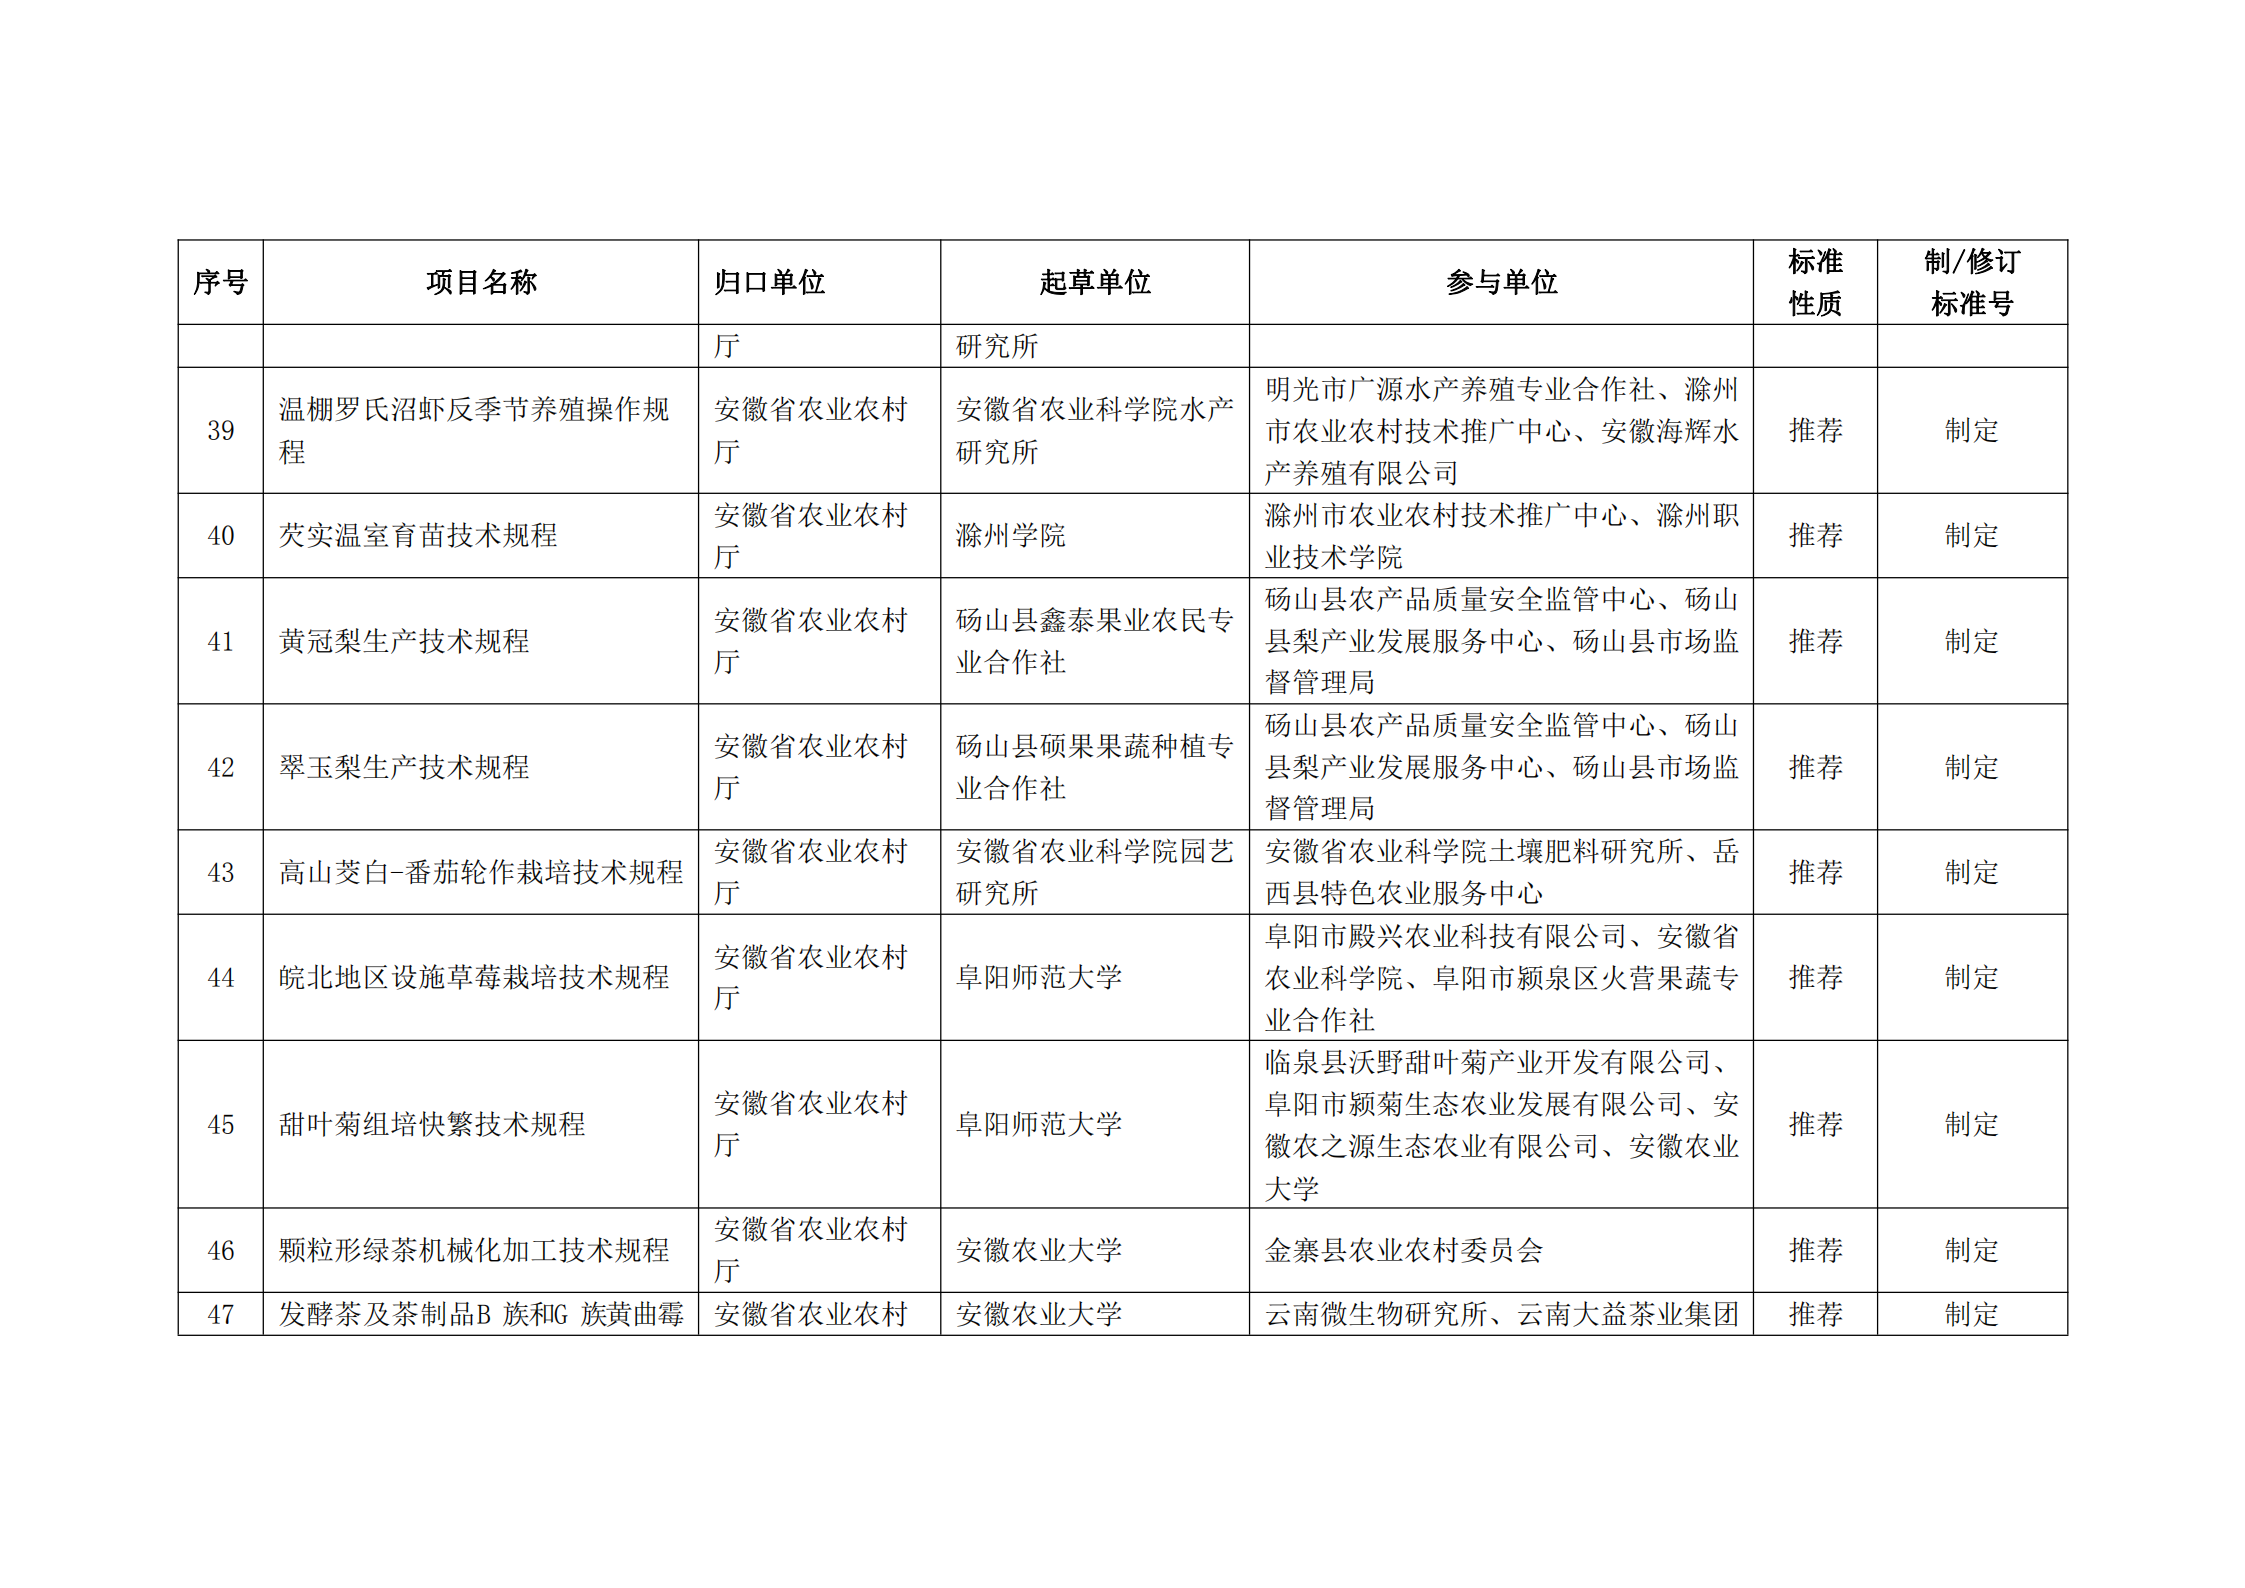 2020 年第二批安徽省地方标准制、修订计划项目汇总表(图5)